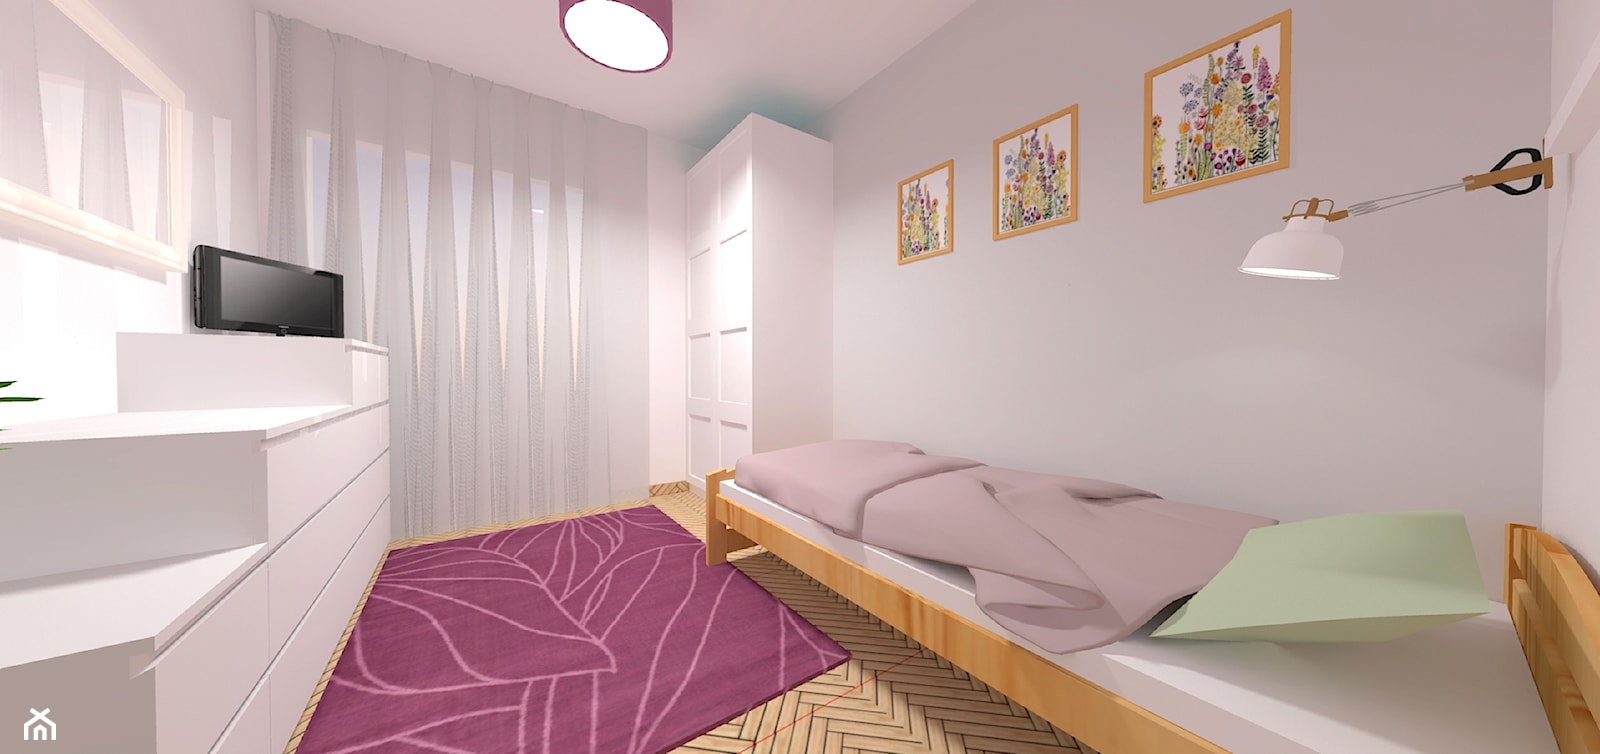 Sypialnia, styl tradycyjny - zdjęcie od AWJ ARANŻACJE - Homebook